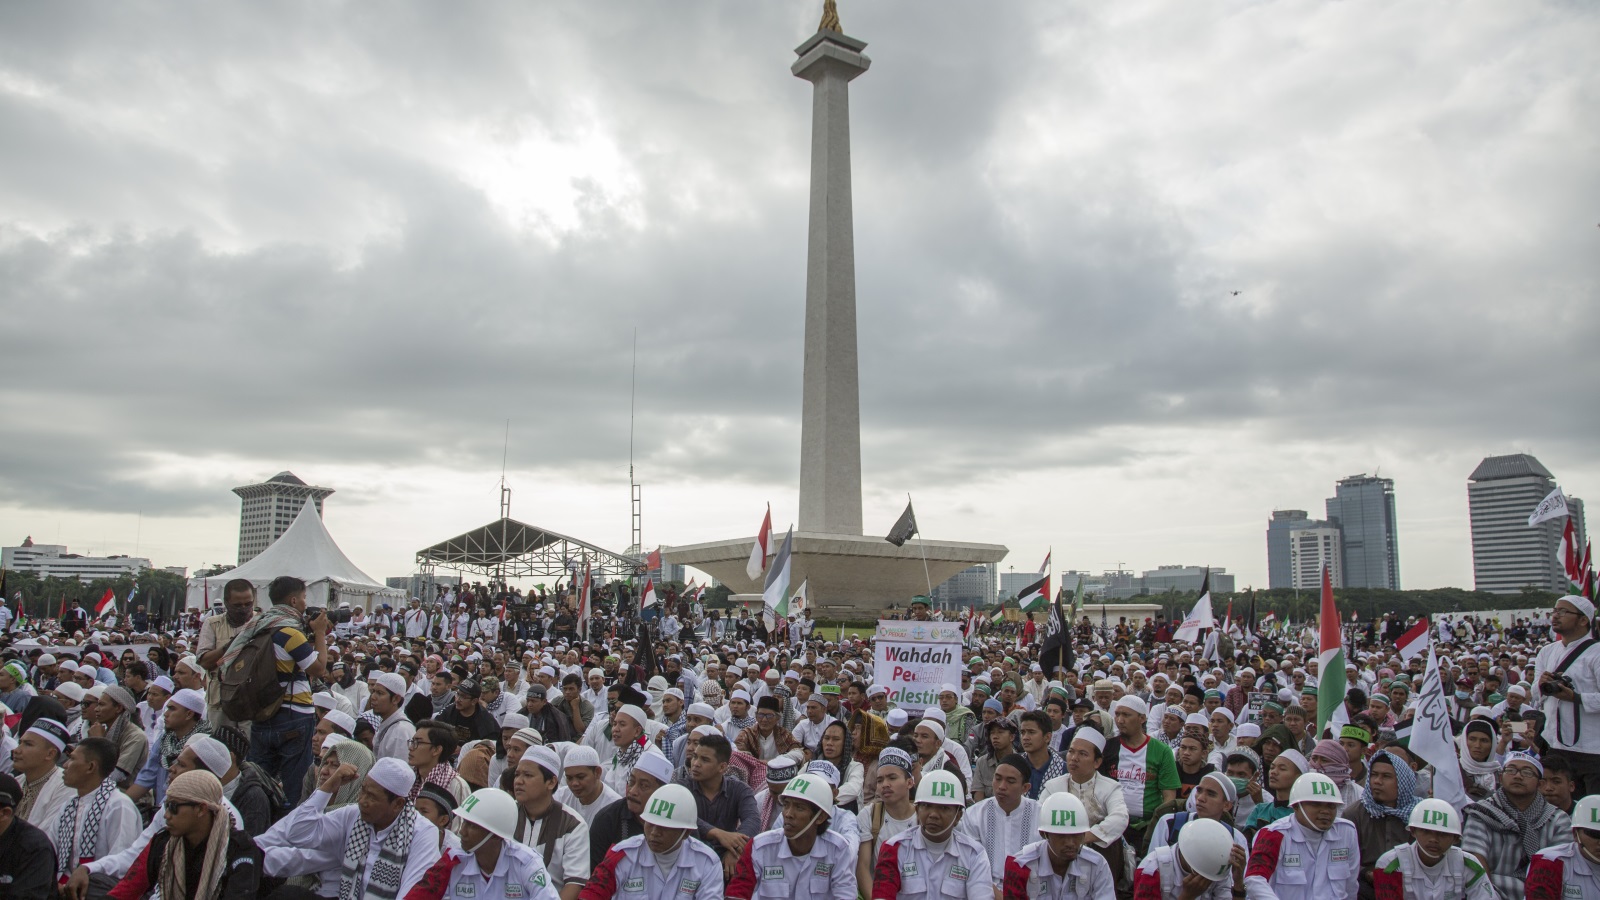 ‪خمسة ملايين إندونيسي احتشدوا في ساحة الاستقلال احتجاجا على قرار ترامب اعتبار القدس عاصمة لإسرائيل‬ (غيتي)